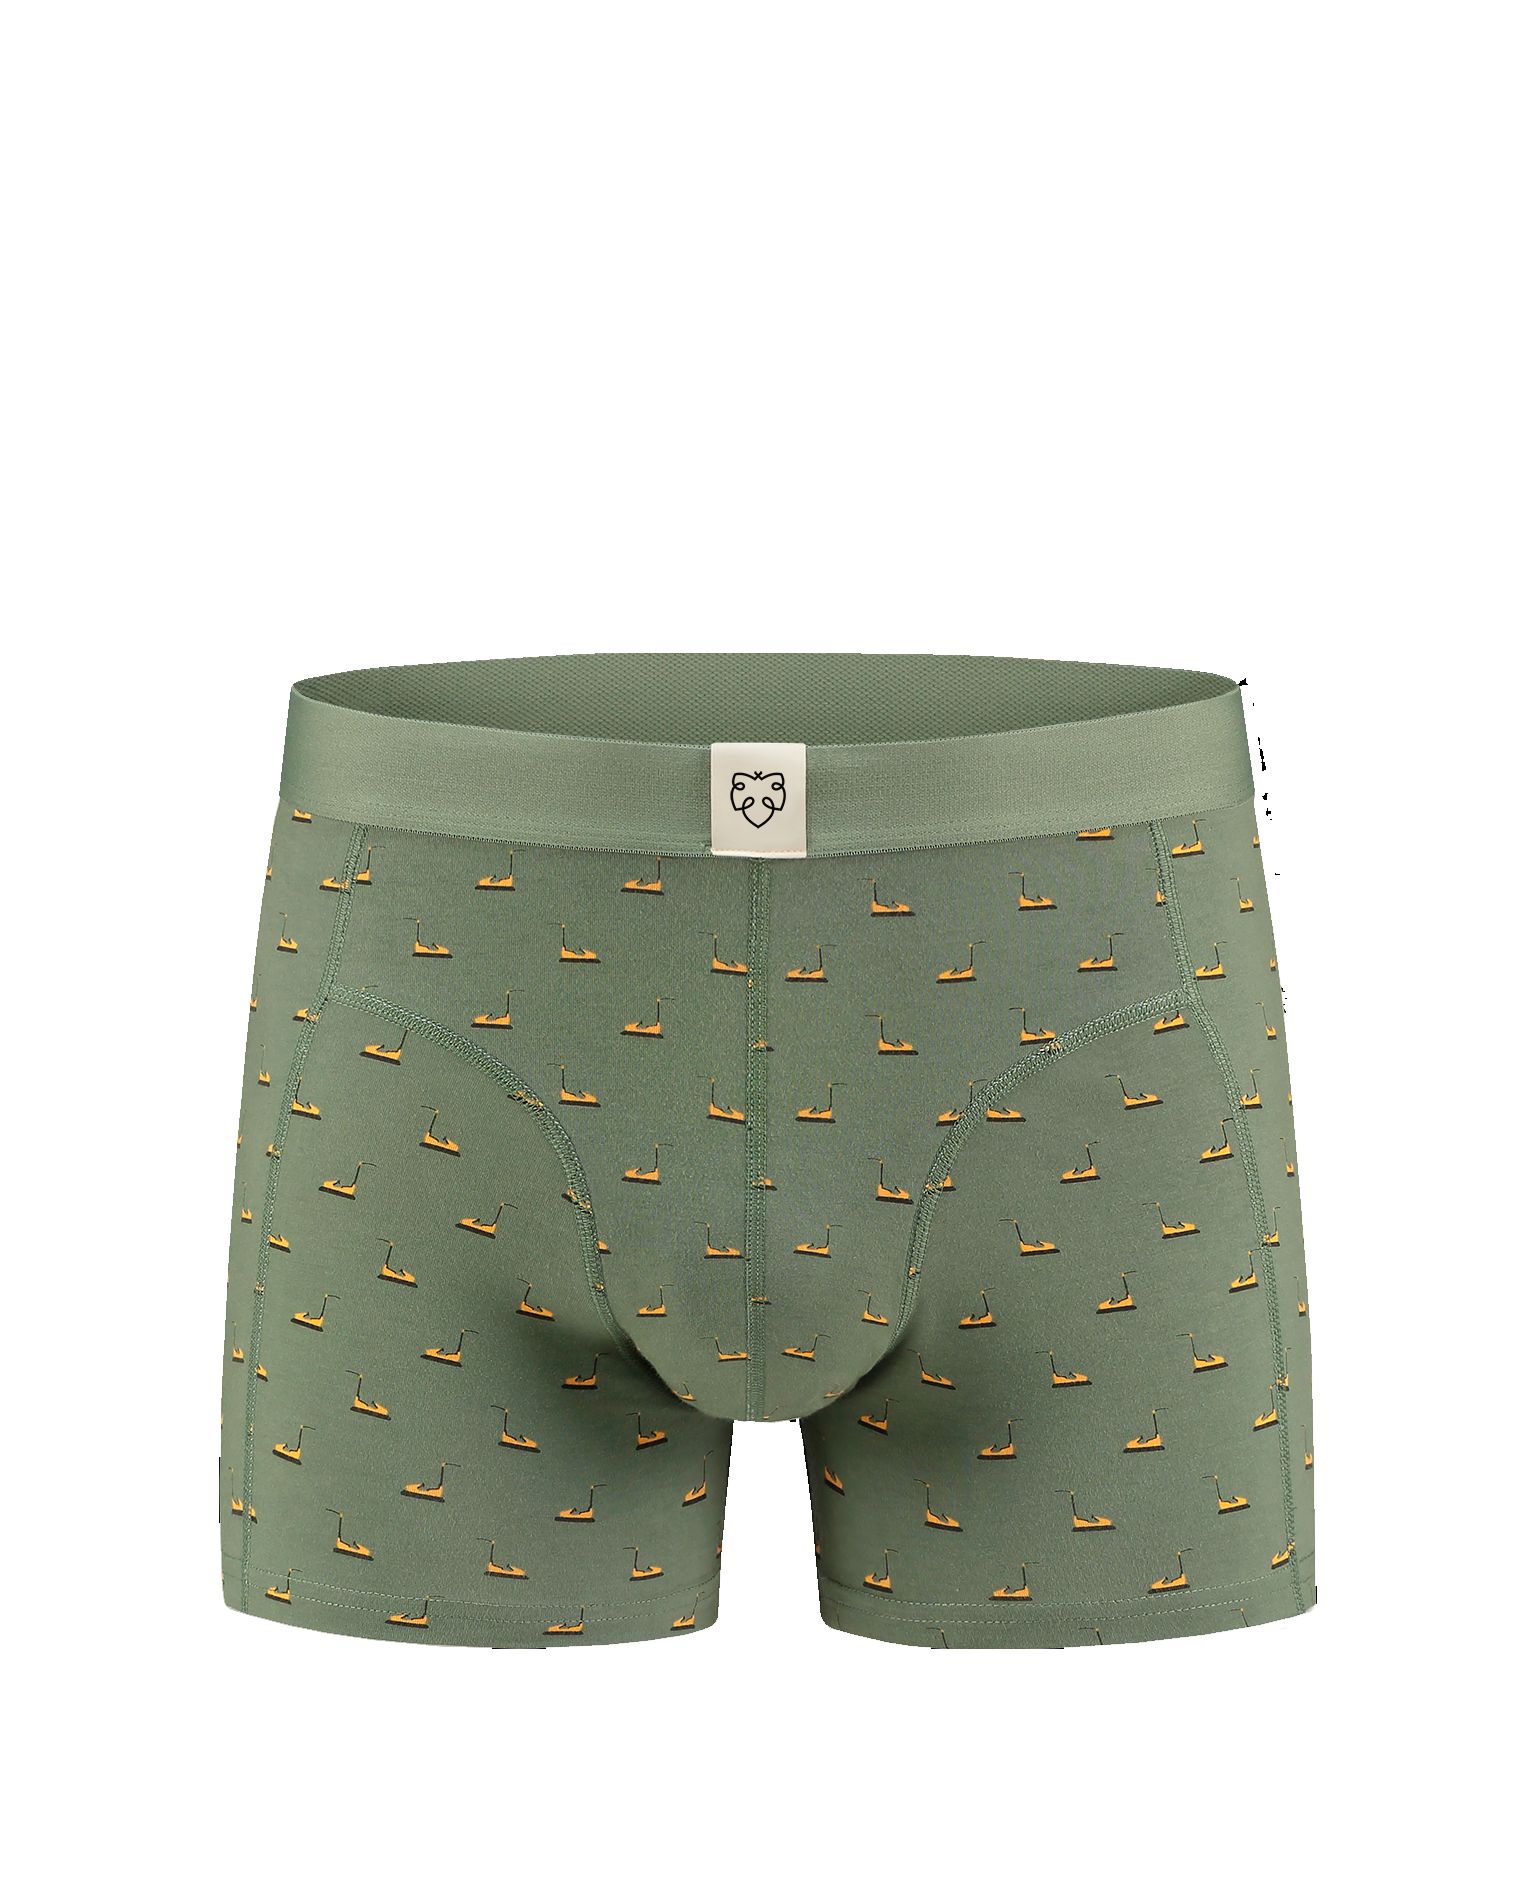 Frank Underwear A-Dam - 2749 - Underwear - Jerone.com